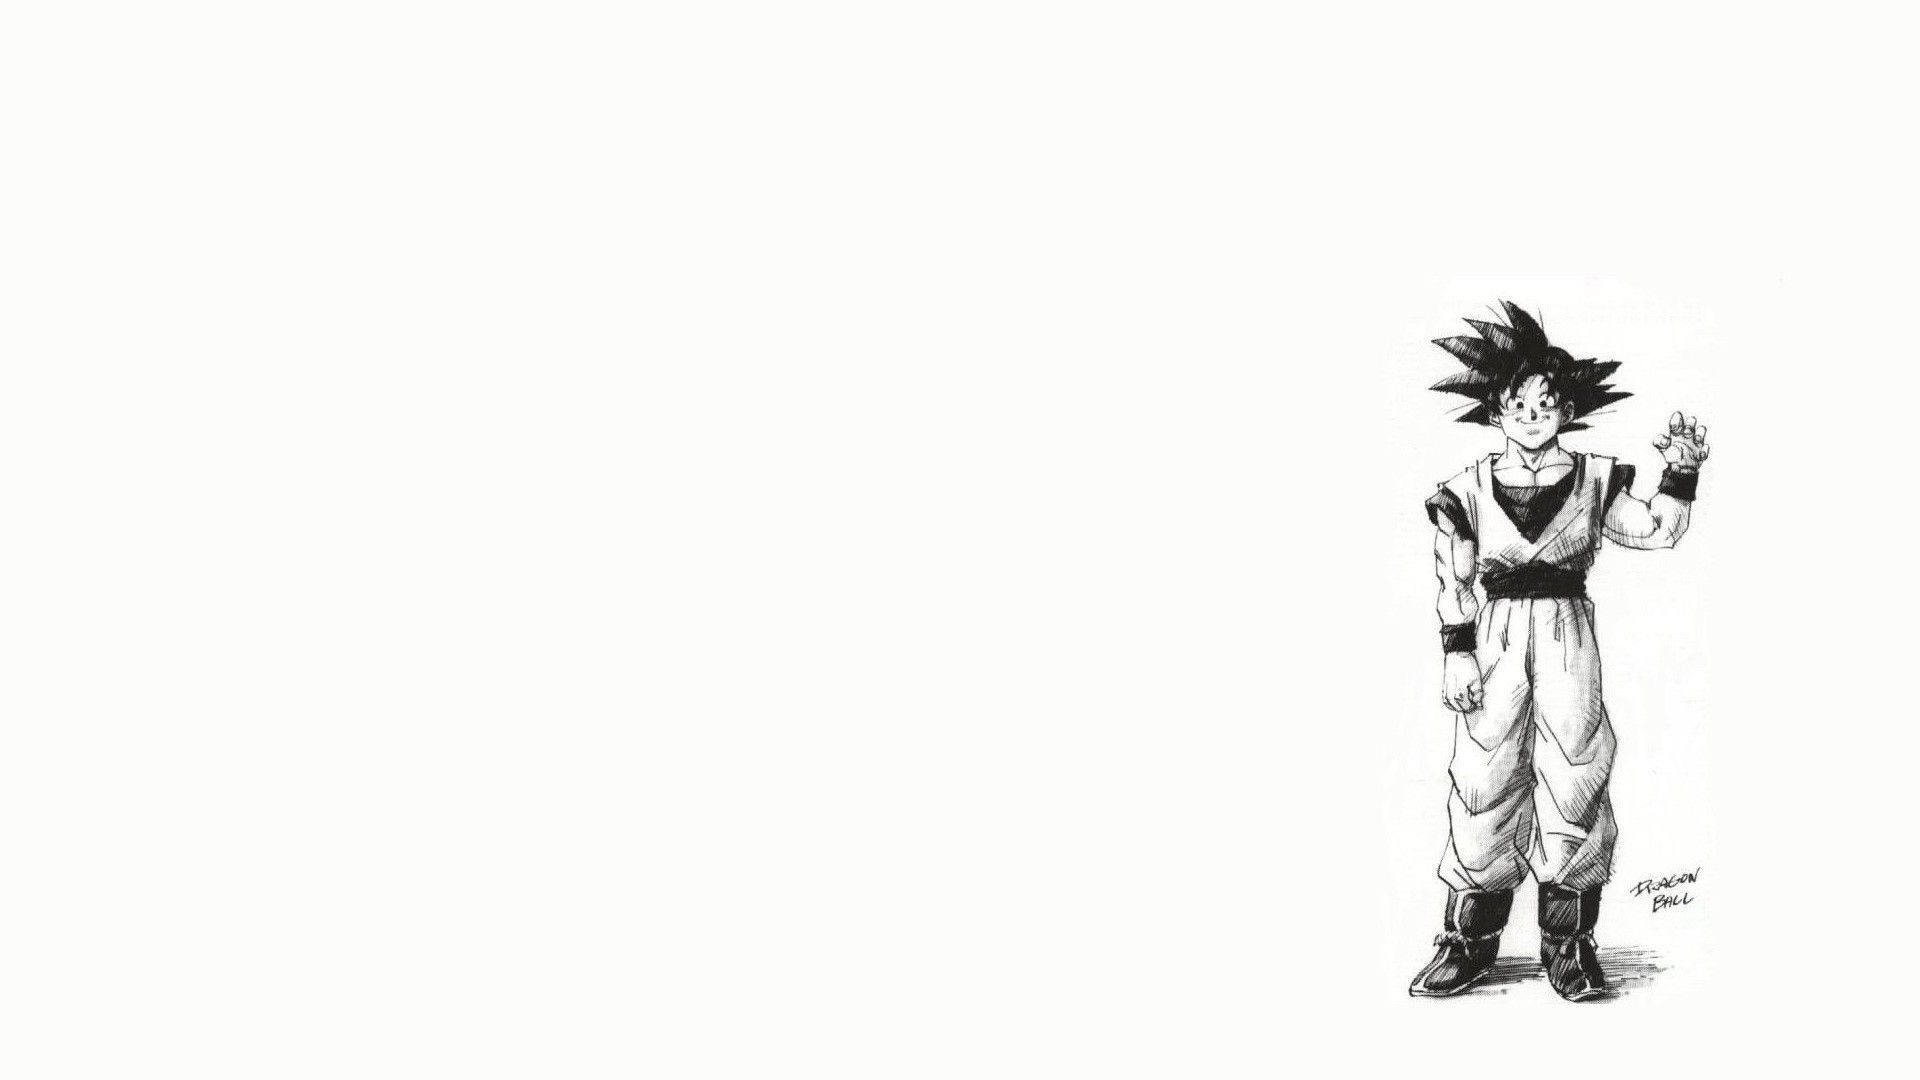 Goku White Background. Naruto Goku Wallpaper, Goku vs Superman Wallpaper and Goku God Wallpaper